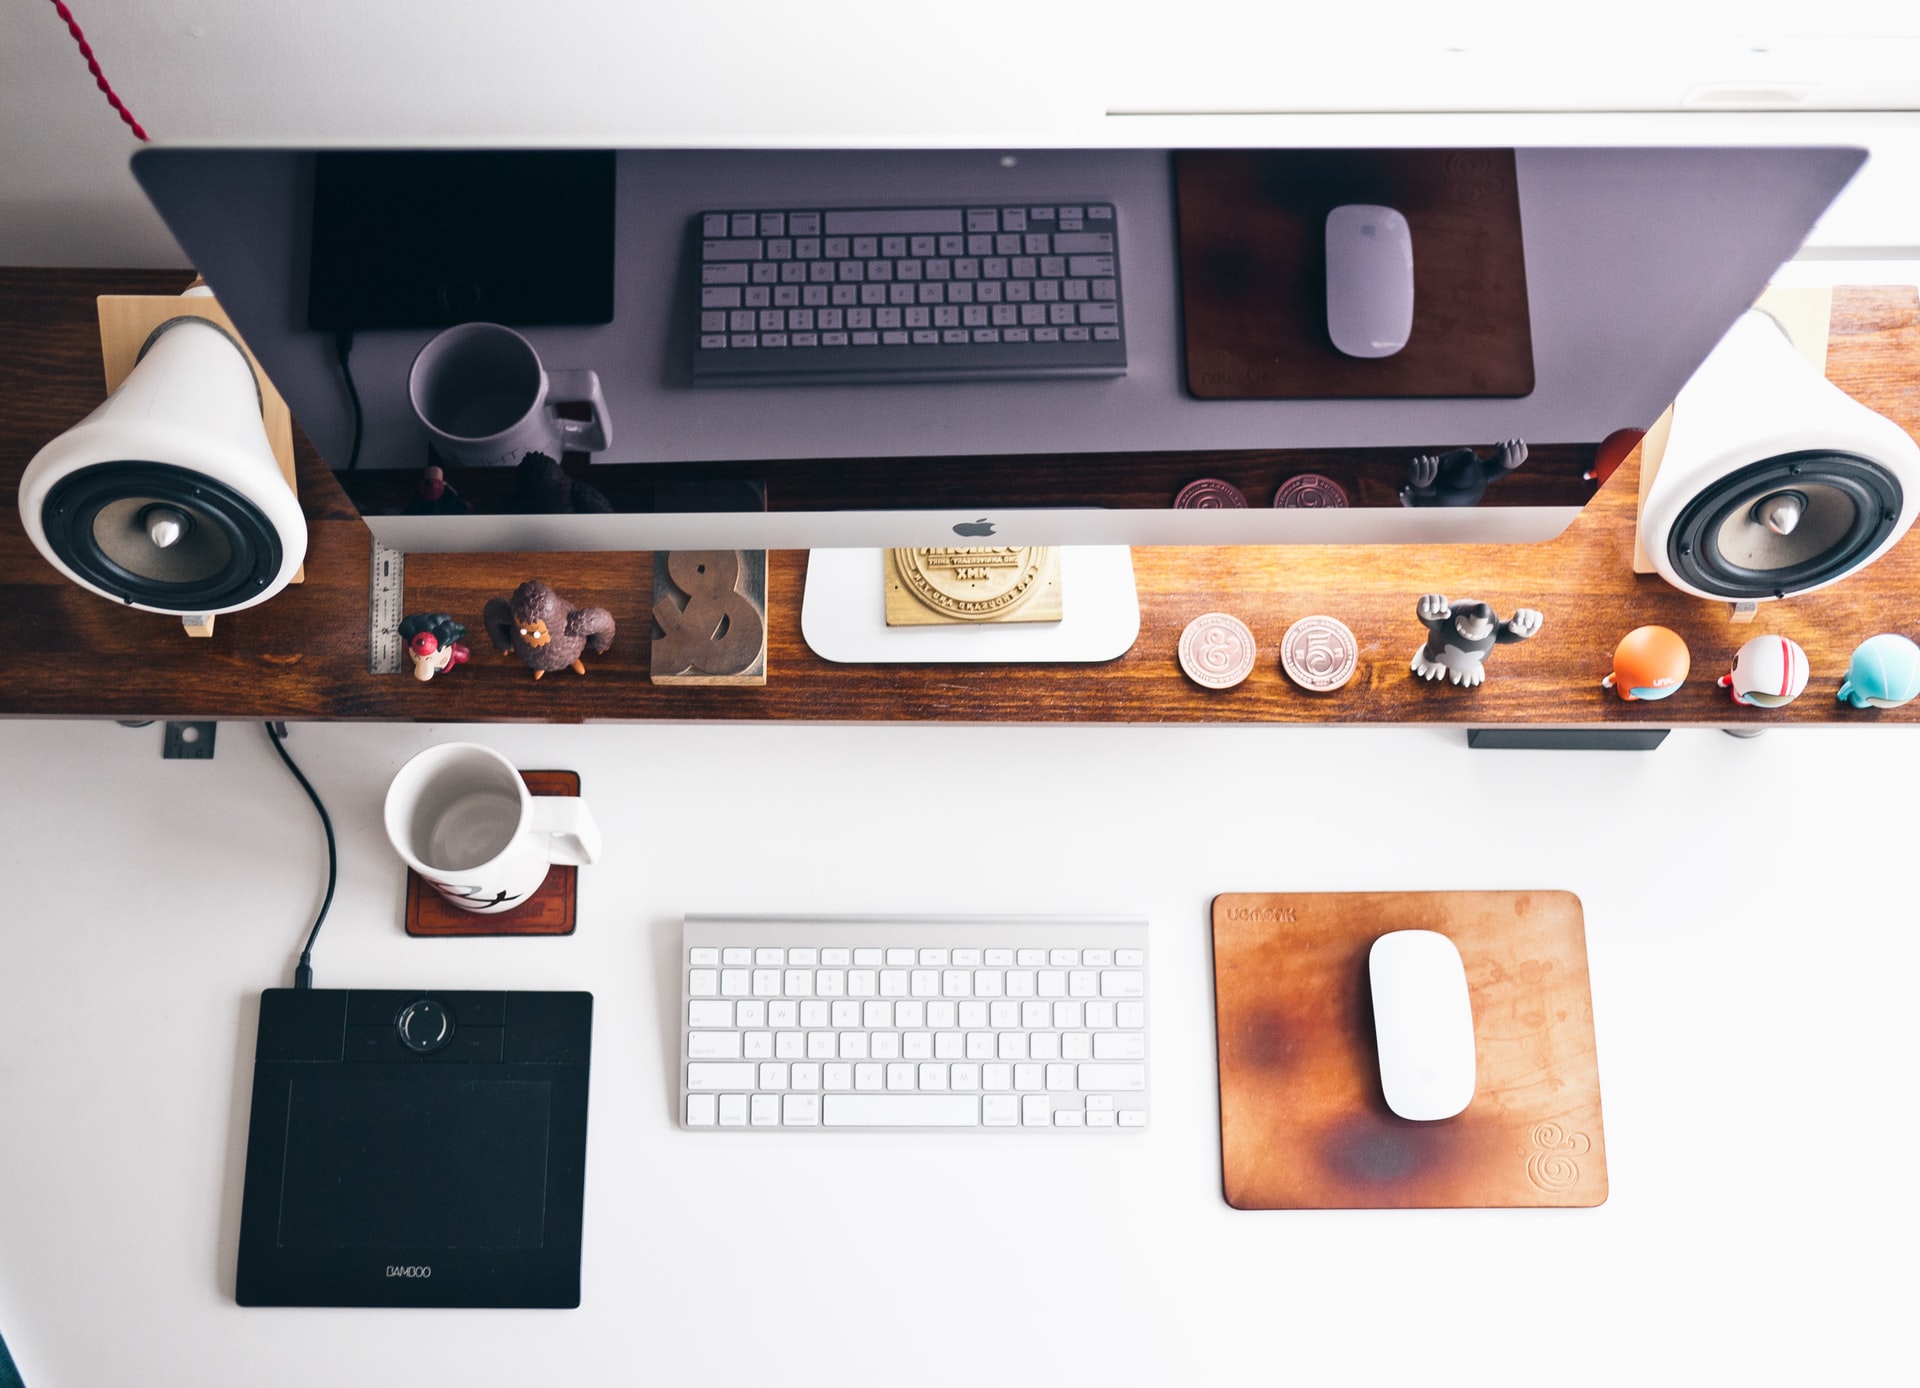 Organized desk with iMac